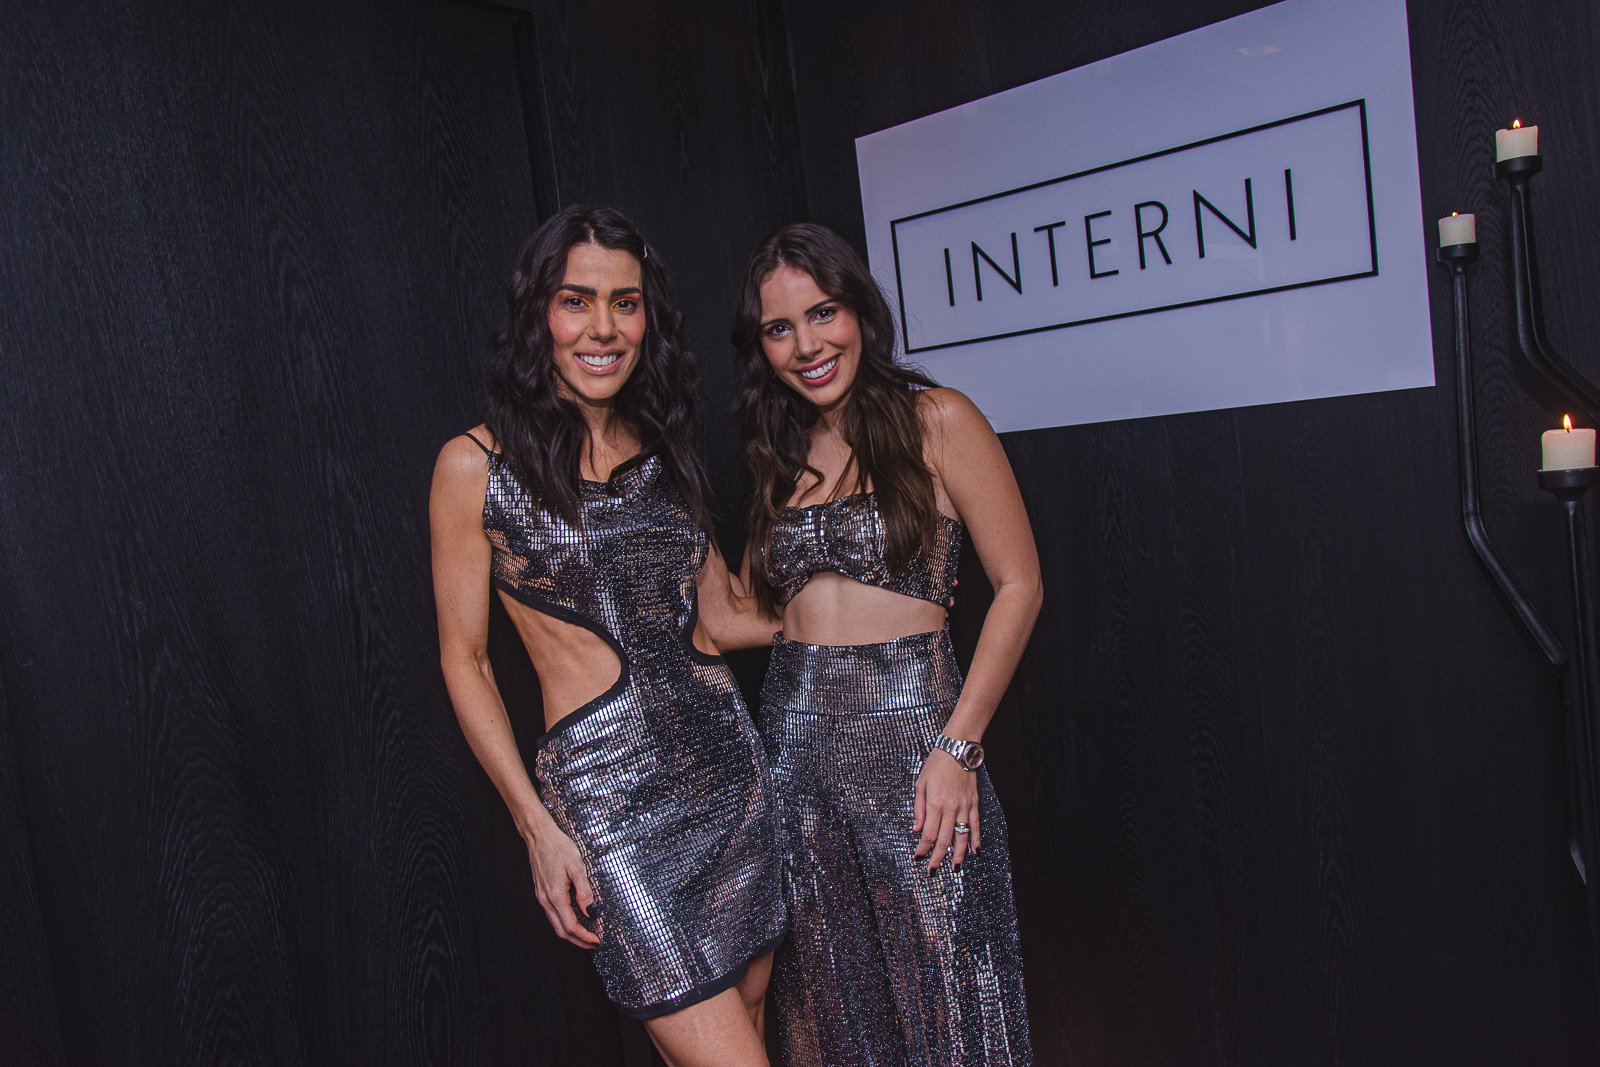 INTERNI promove fashion show em clima de Jingle Bells no endereço de Juliana Cordeiro